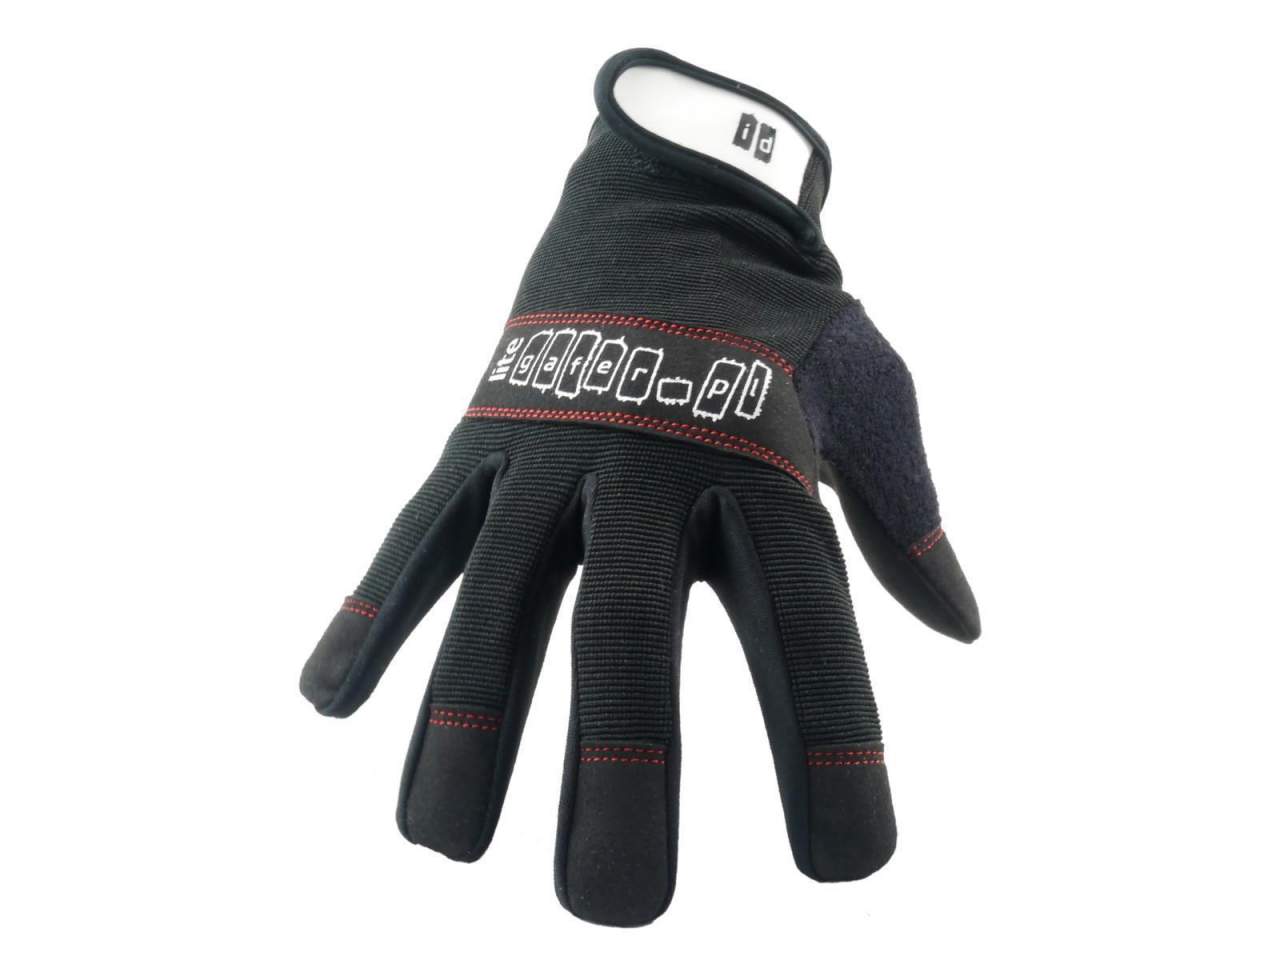 GAFER-PL Lite glove Handschuh- Grsse XL